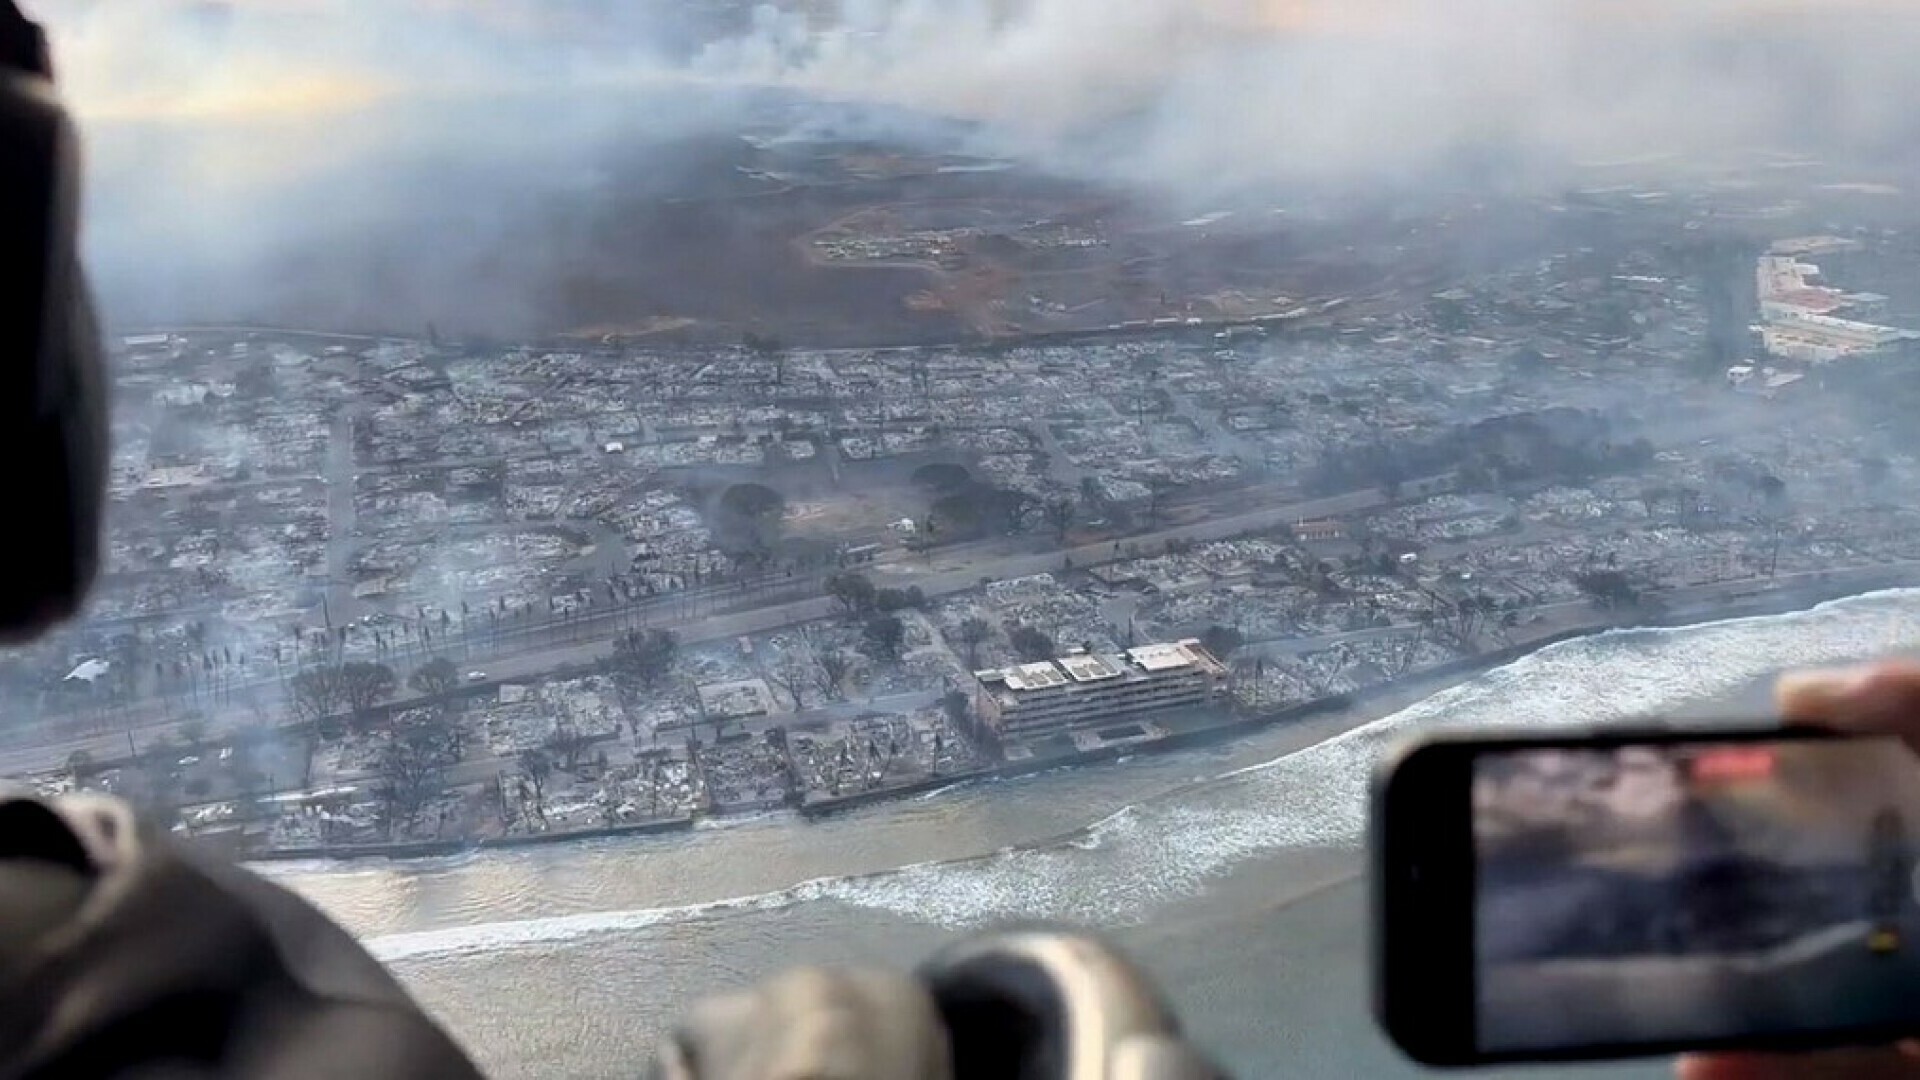 FOTO/VIDEO Požar razorio grad na Havajima: Ljudi se bacaju u ocean, tisuće evakuirane, vatrena buktinja spalila povijesnu jezgru